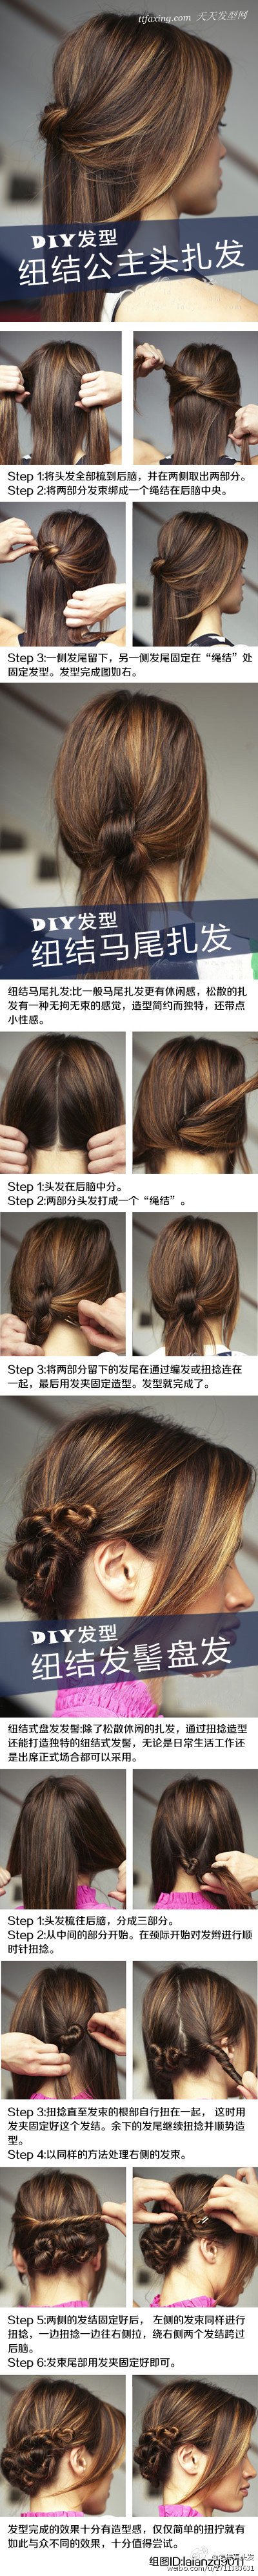 教大家3款纽结式的DIY发型，看上去简约而有心思，演绎最时尚随意 zaoxingkong.com